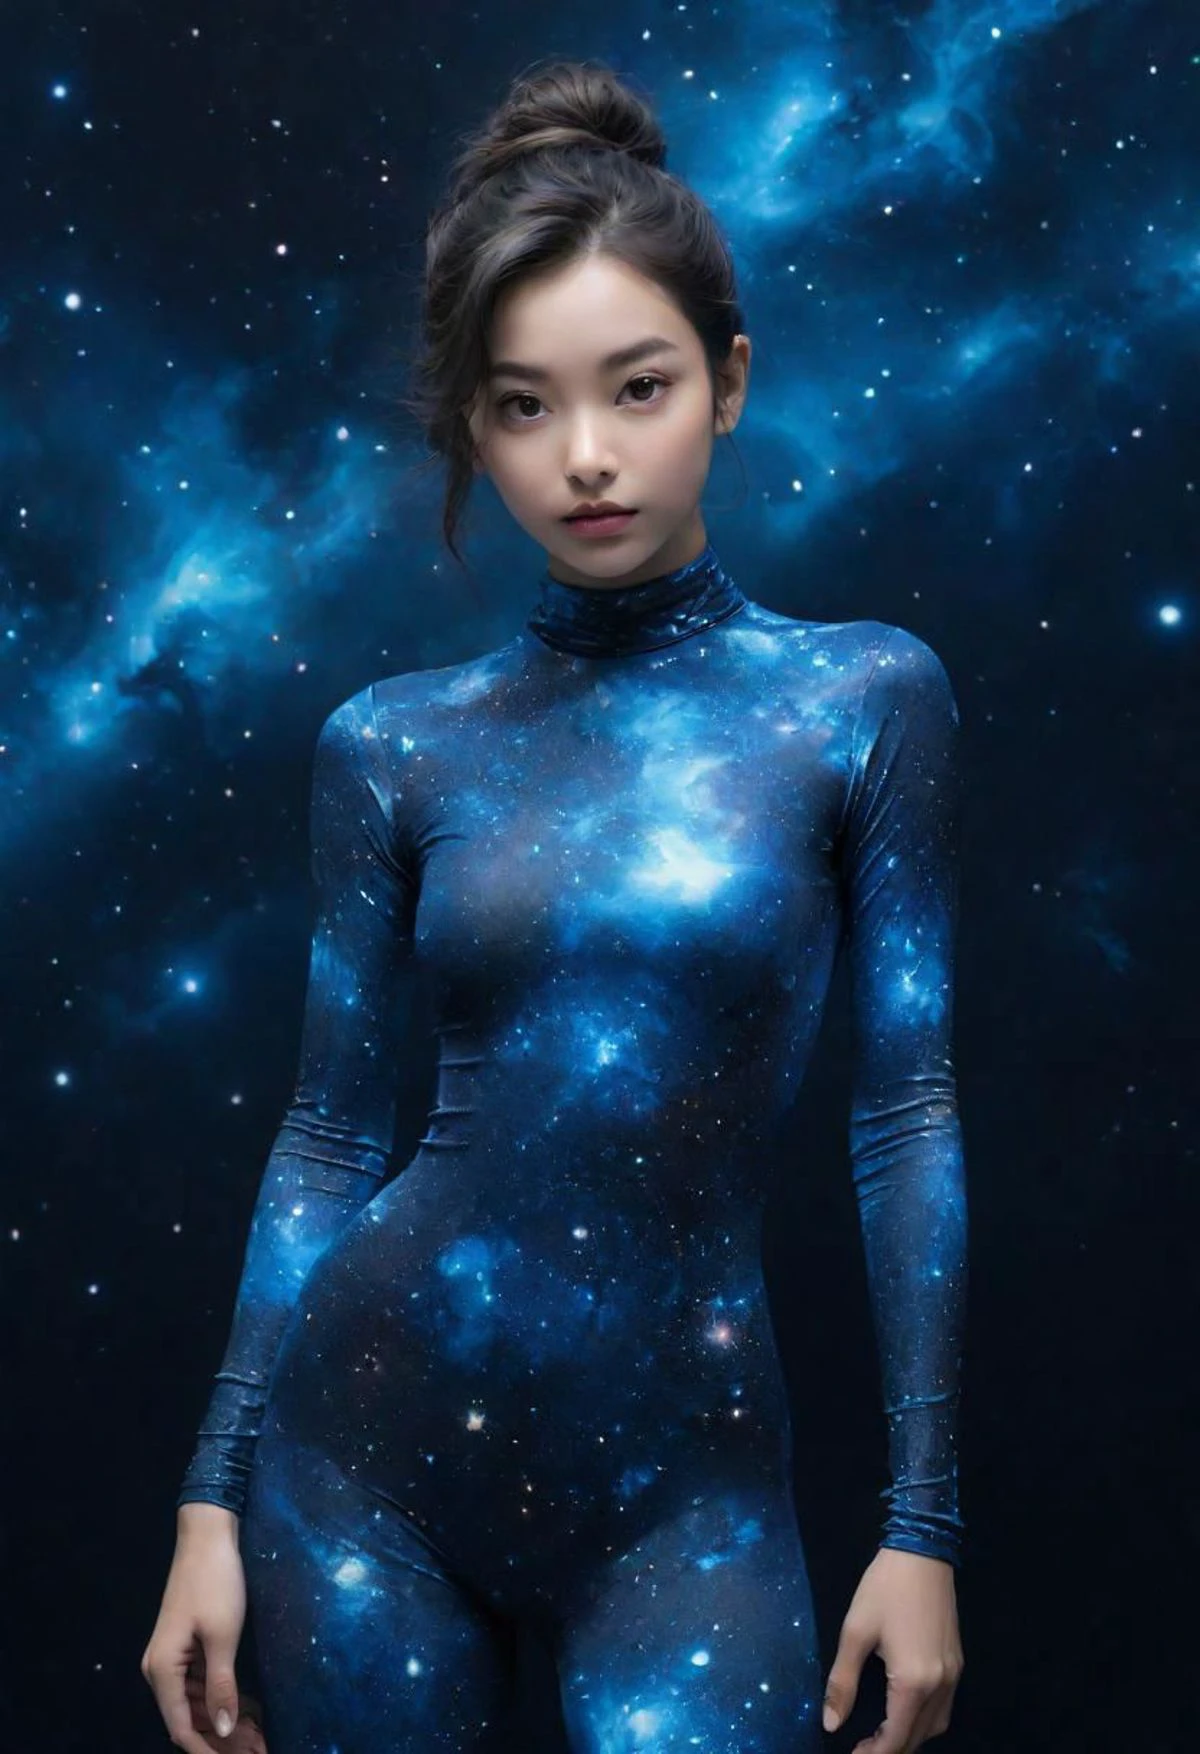 슈퍼 근접 촬영 초상화,  푸른 우주의 여성 프린트 스판덱스 풀 바디수트가 발끝으로 서 있는 모습